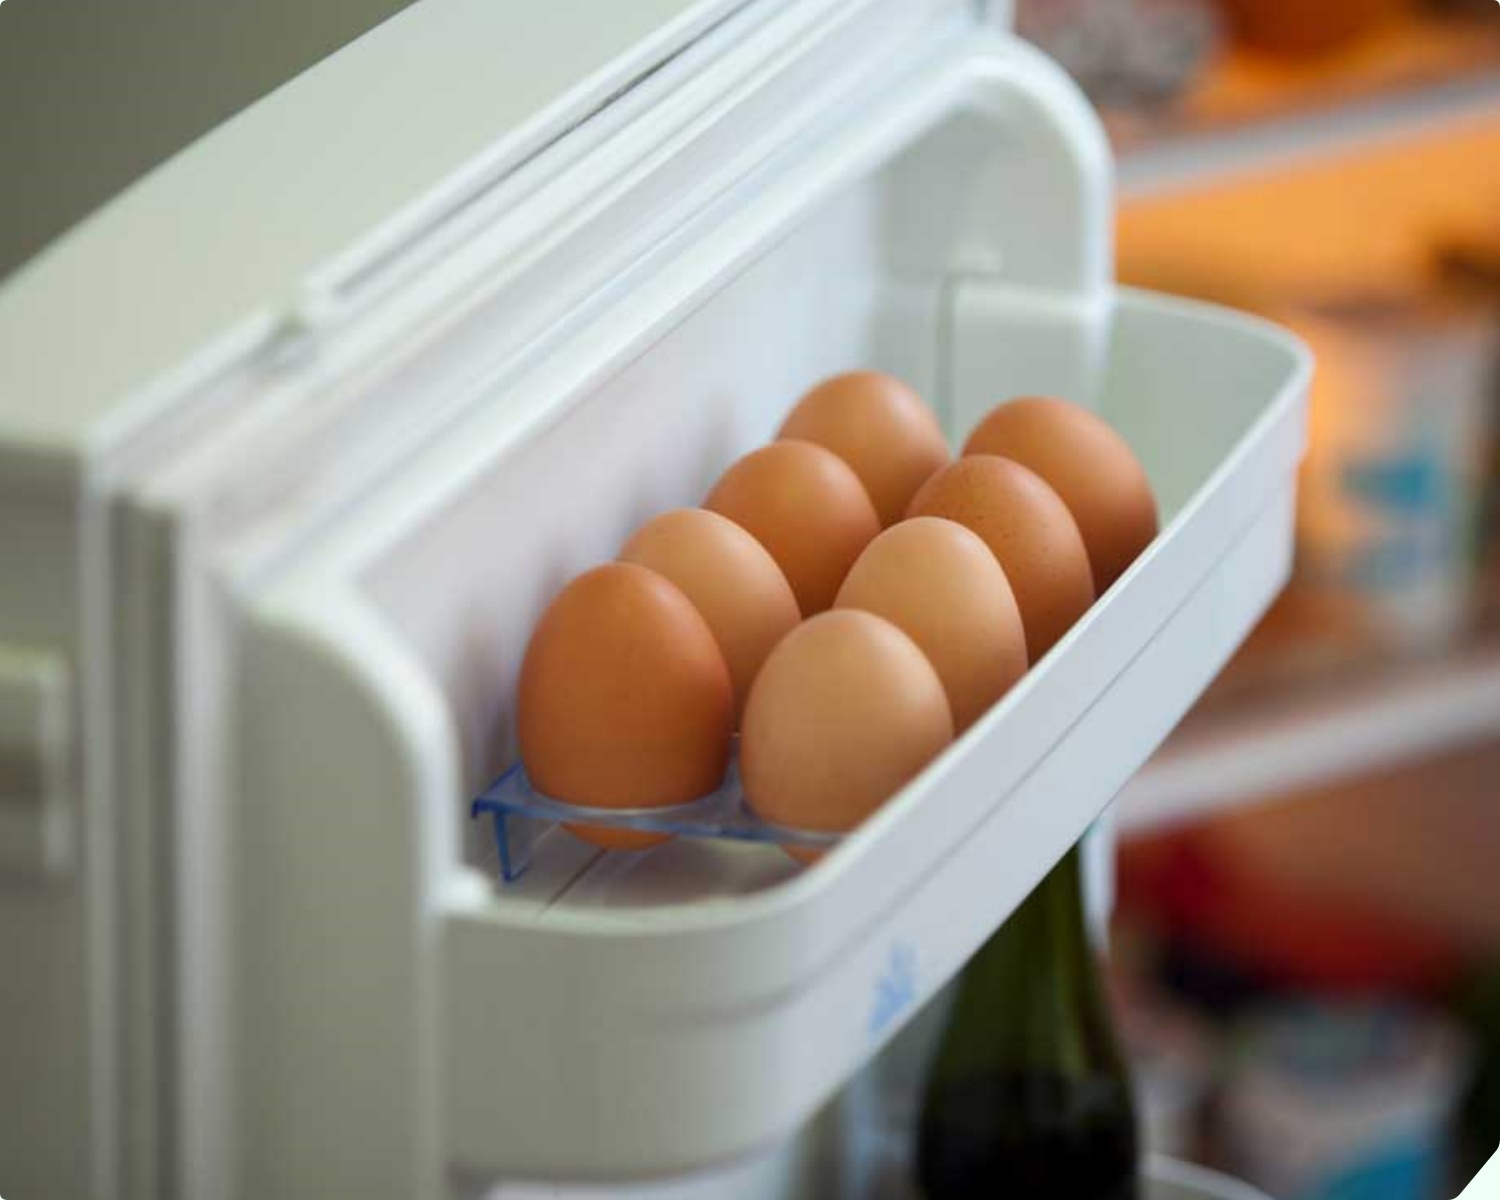 5 loại thực phẩm đừng bao giờ để ở cánh tủ lạnh, hãy lấy ra nhanh kẻo rước họa vào thân - 4